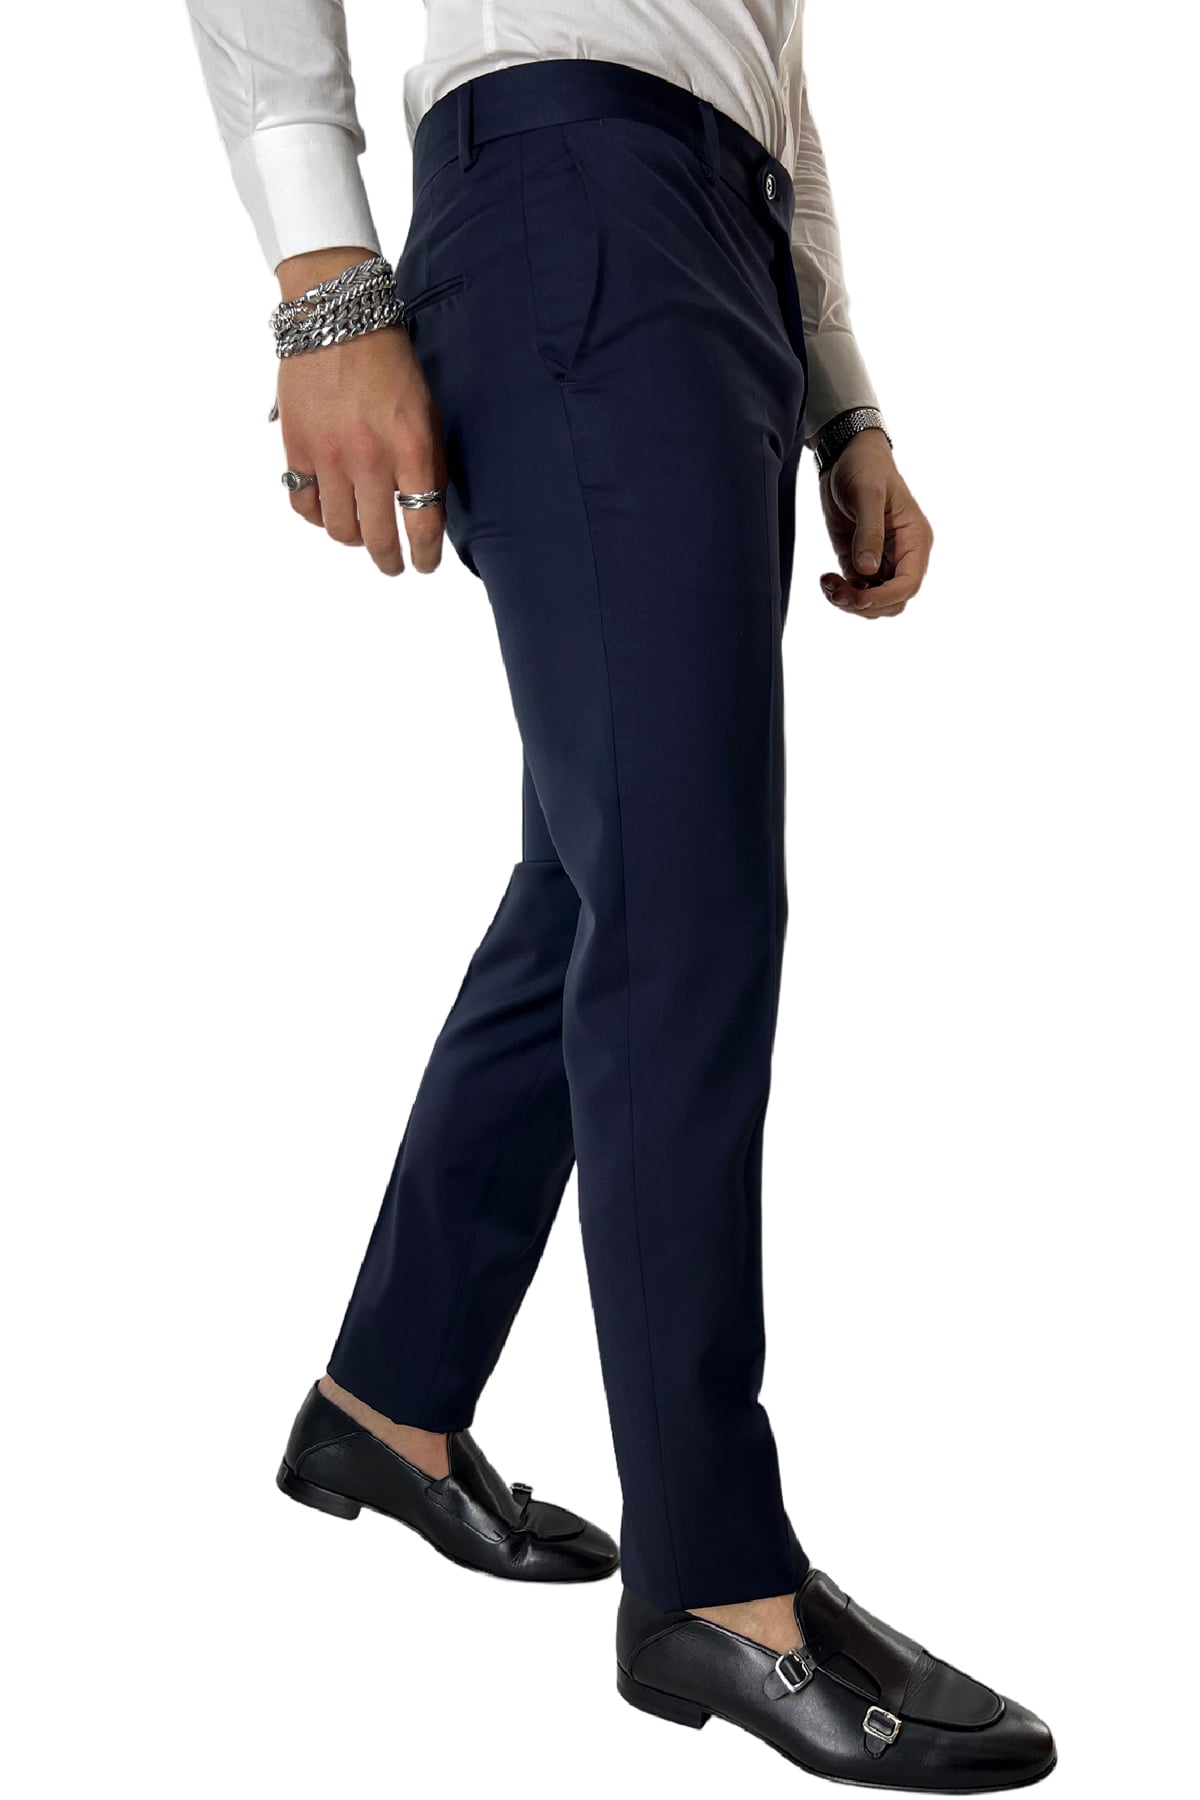 Pantalone uomo Blu Navy tasca america in fresco lana 100% Vitale Barberis Canonico